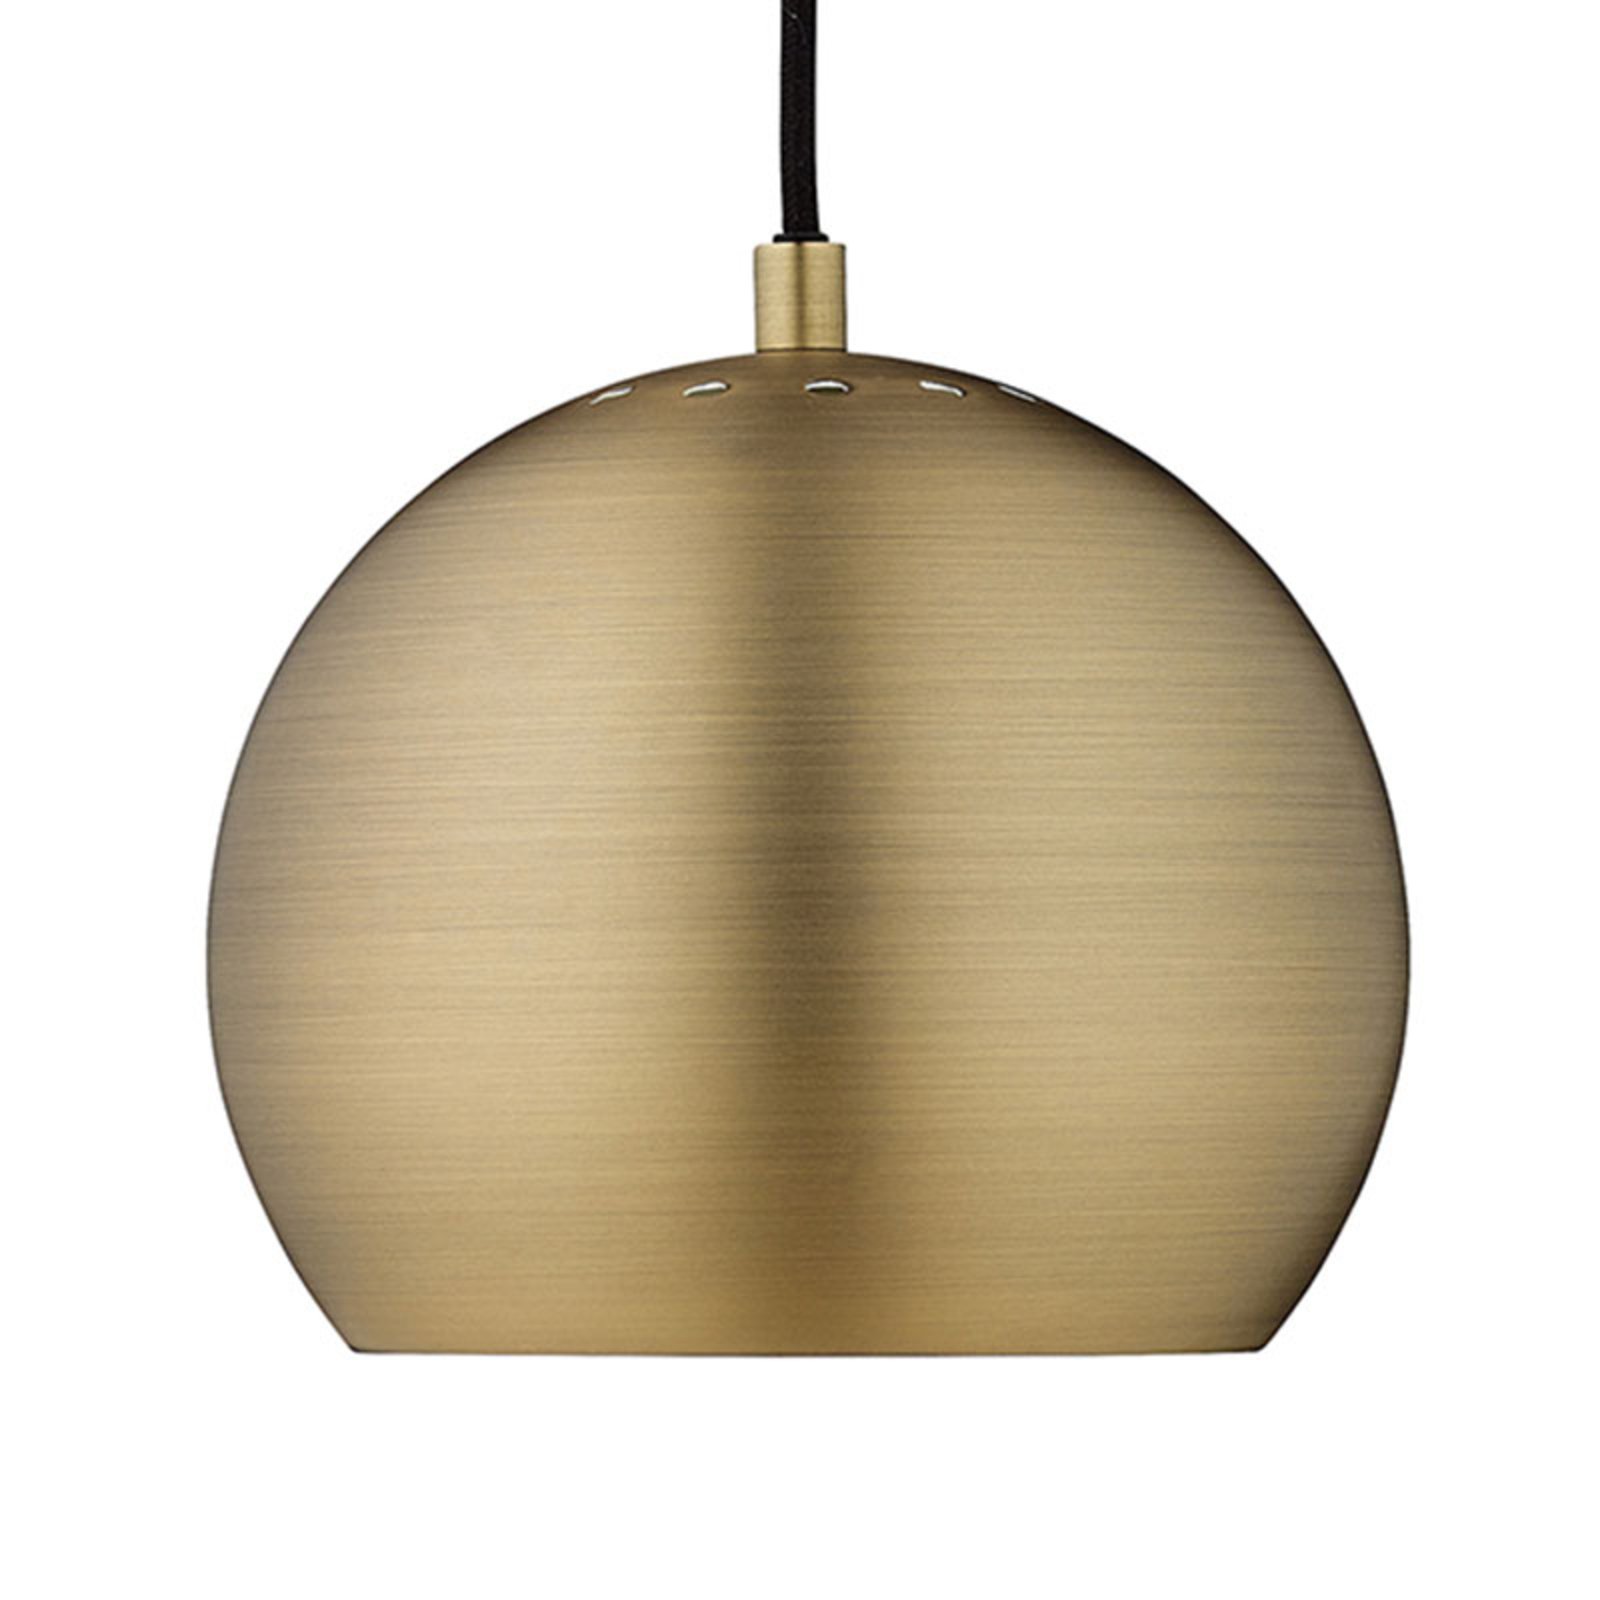 Lampada a sospensione FRANDSEN Ball, colore ottone antico, Ø 18 cm